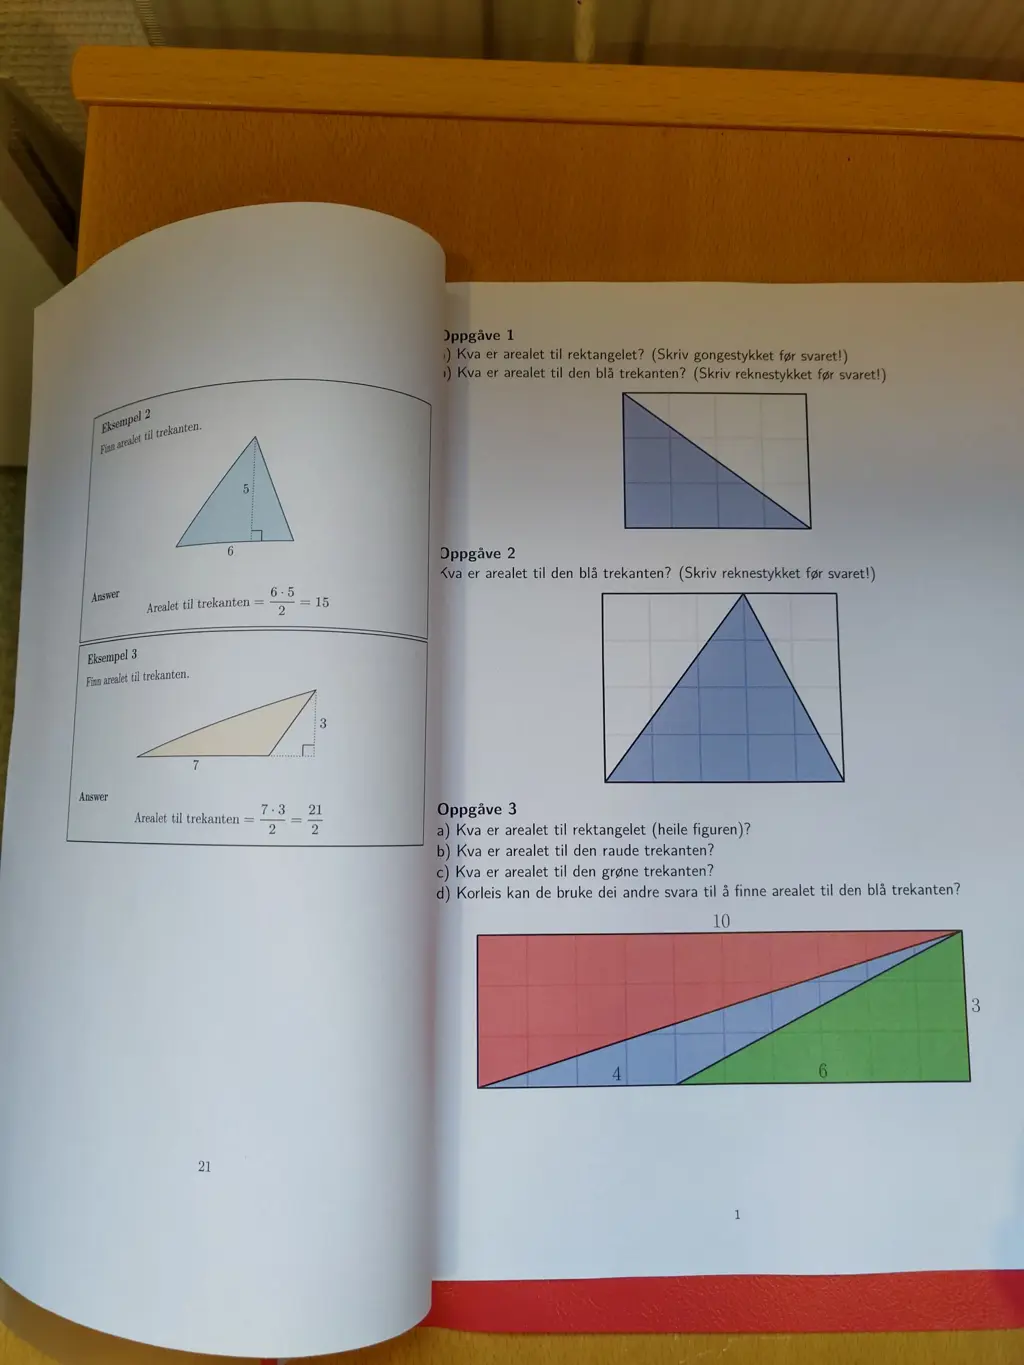 Bilde av geometri i en mattebok